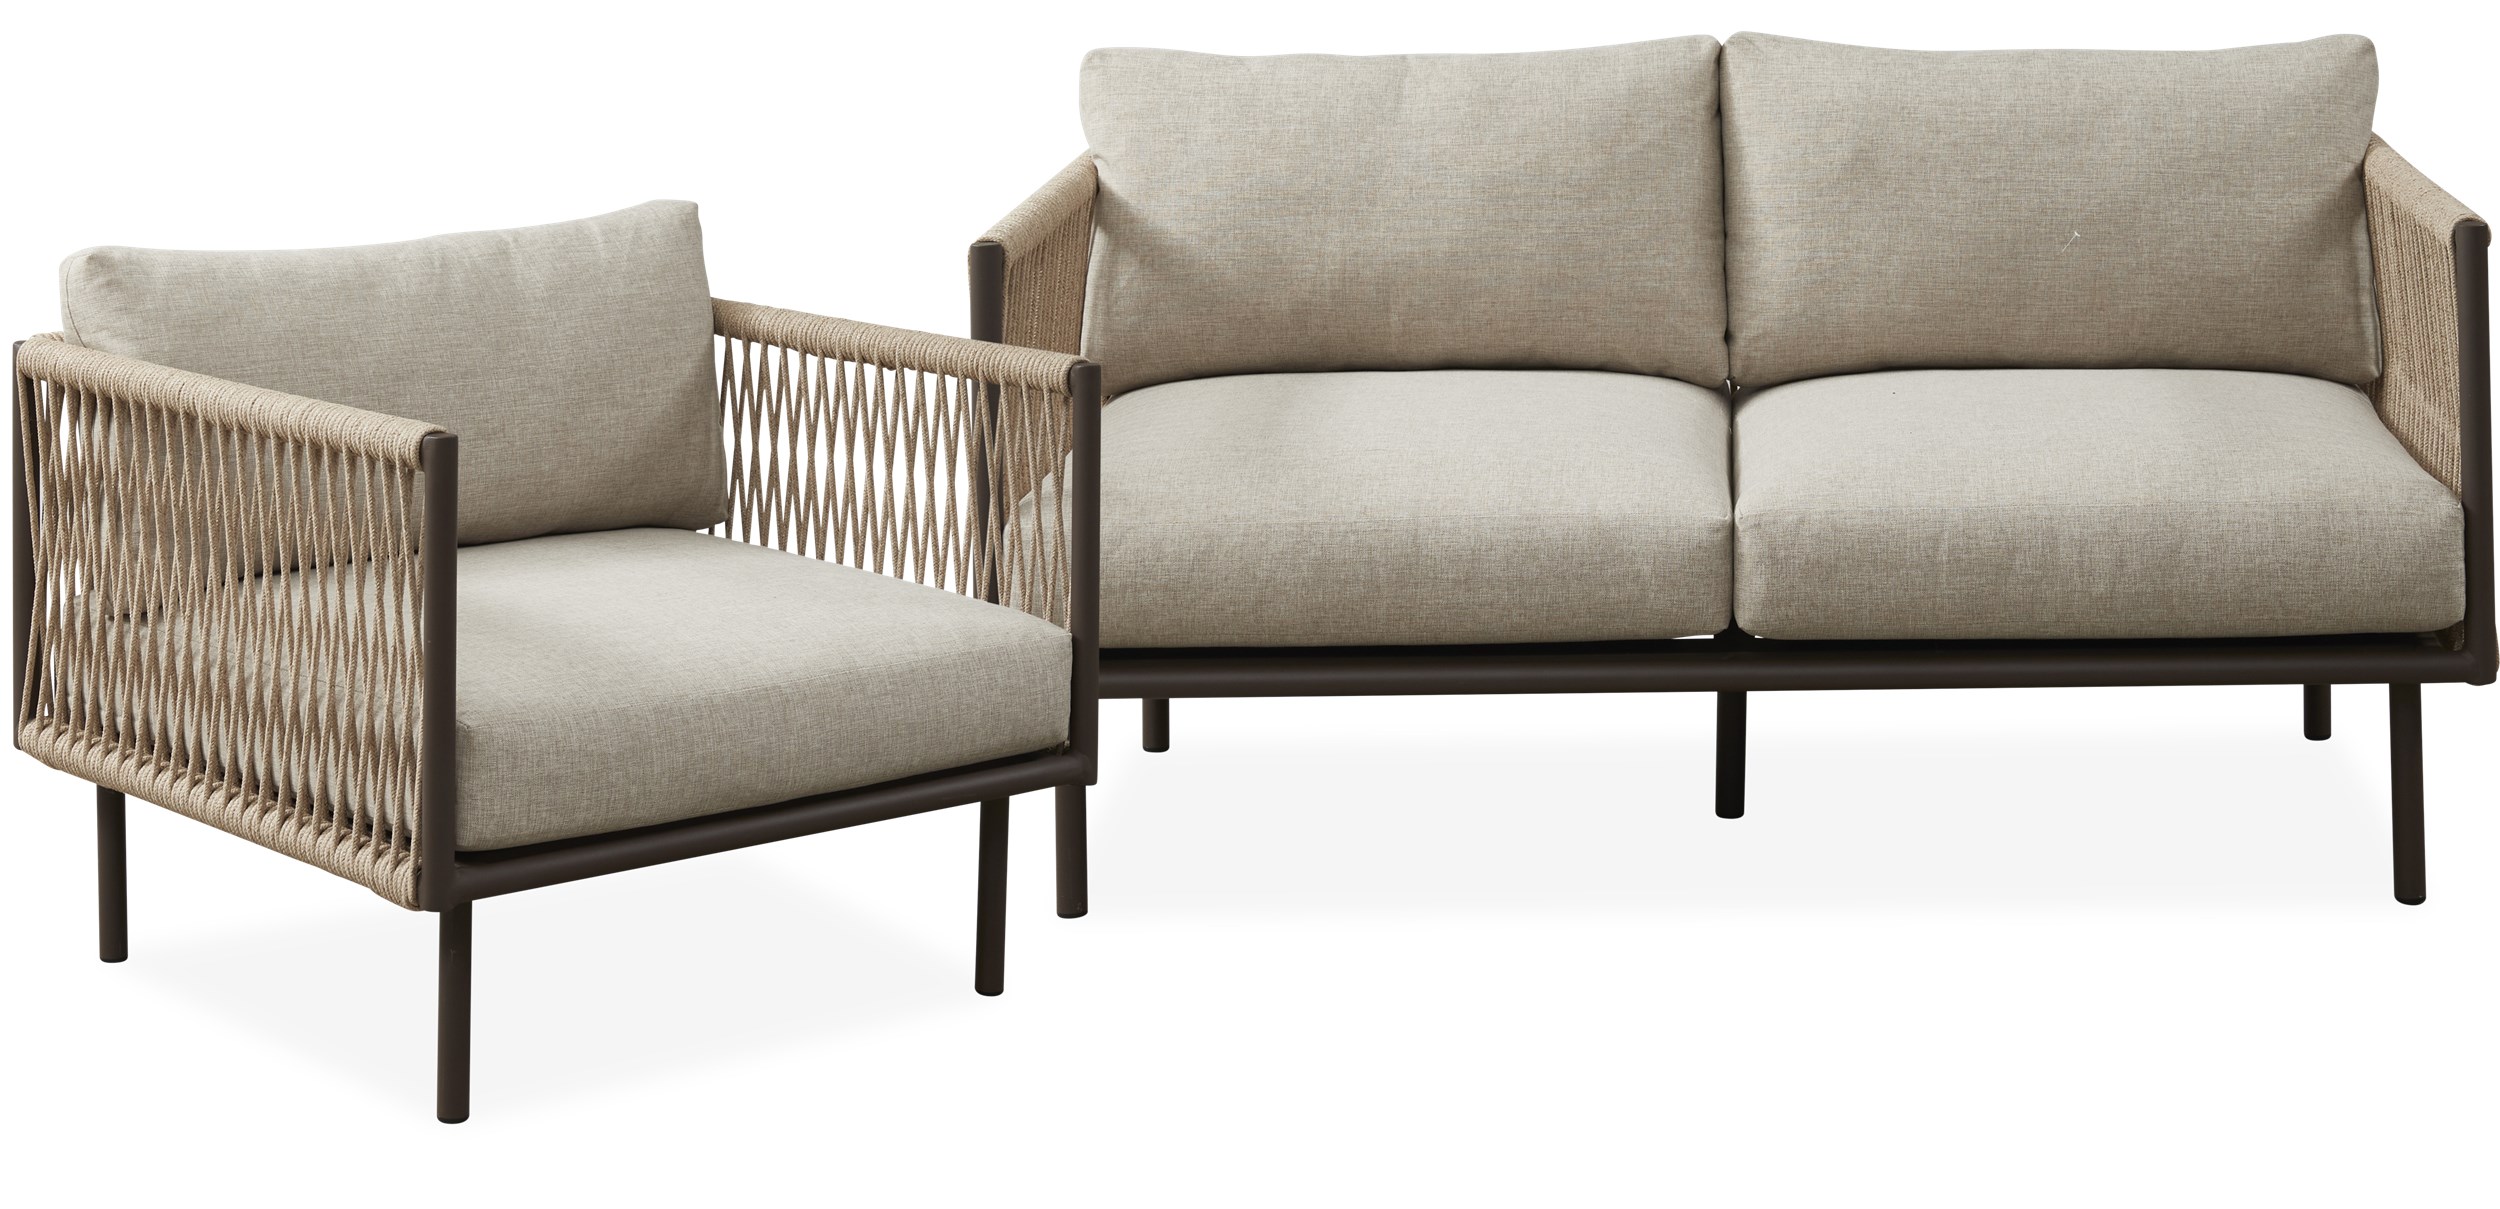 Oblic Loungeset med 1 soffa + stol sandfärgat